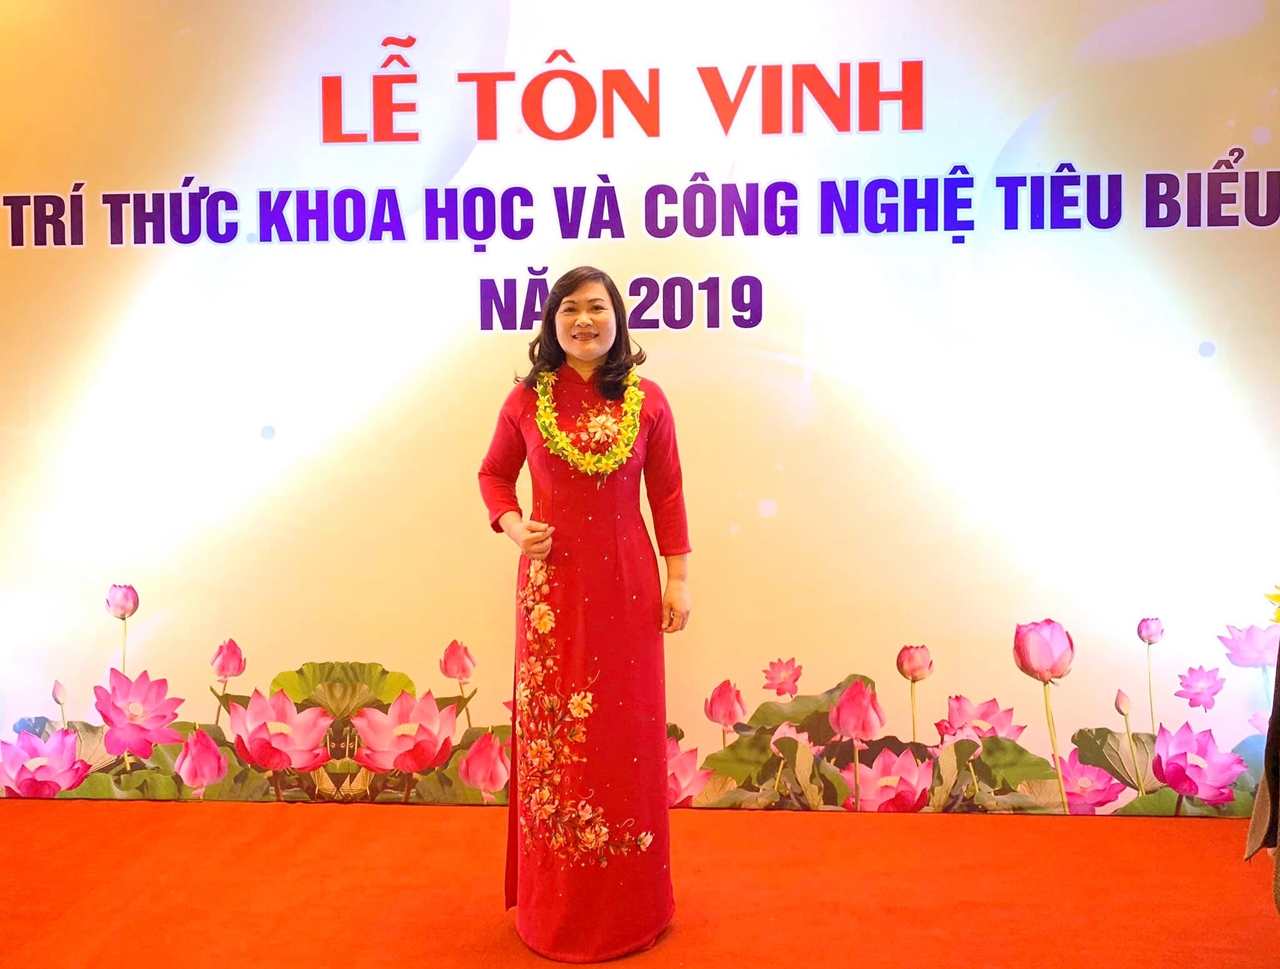 Bác sĩ Nguyễn Thị Hương, Ảnh do nhân vật cung cấp.